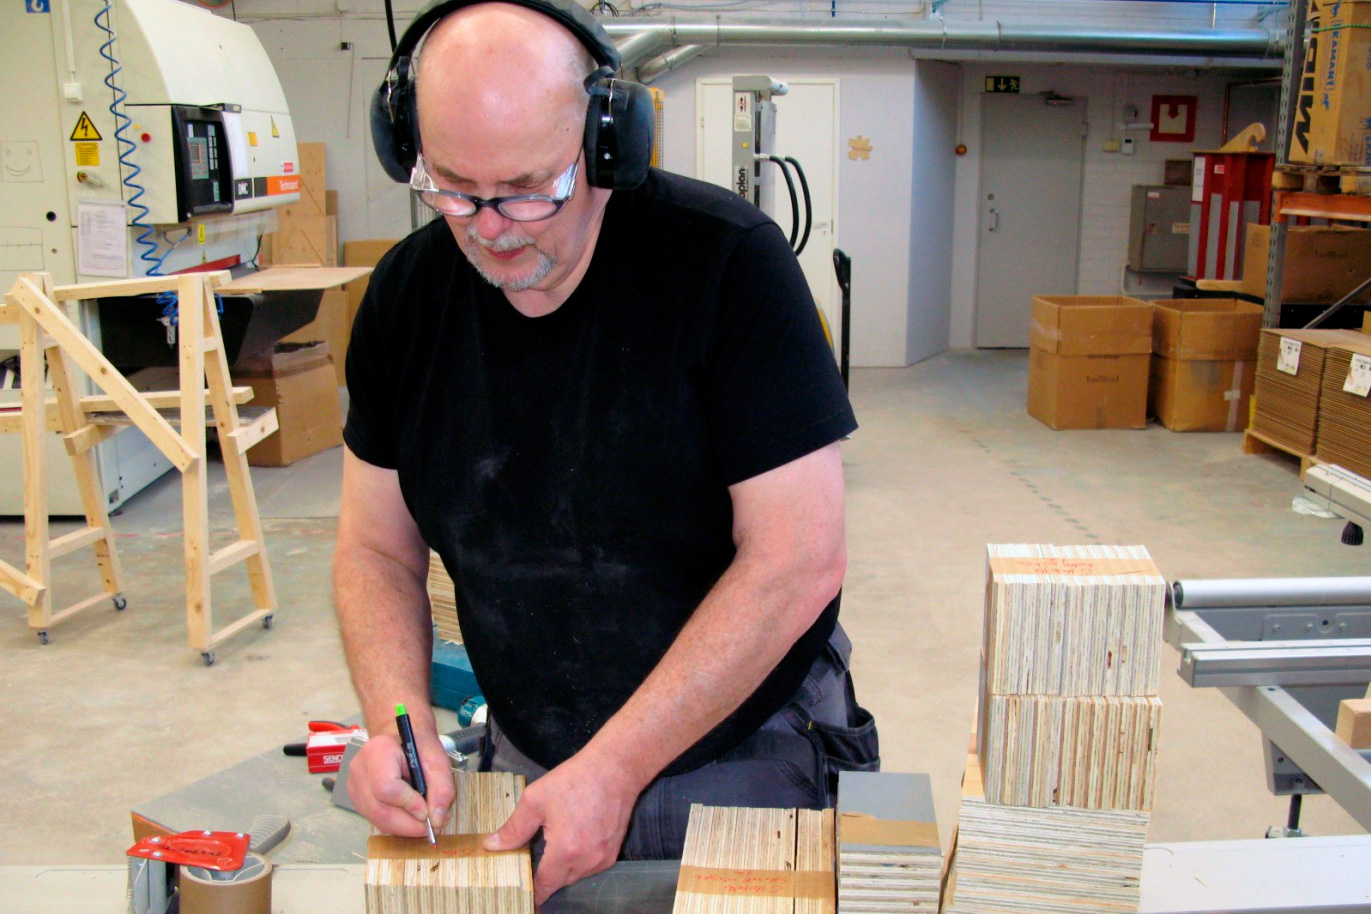 Un homme dessine des marques sur des blocs de bois. Il porte une protection auditive et des lunettes de sécurité.